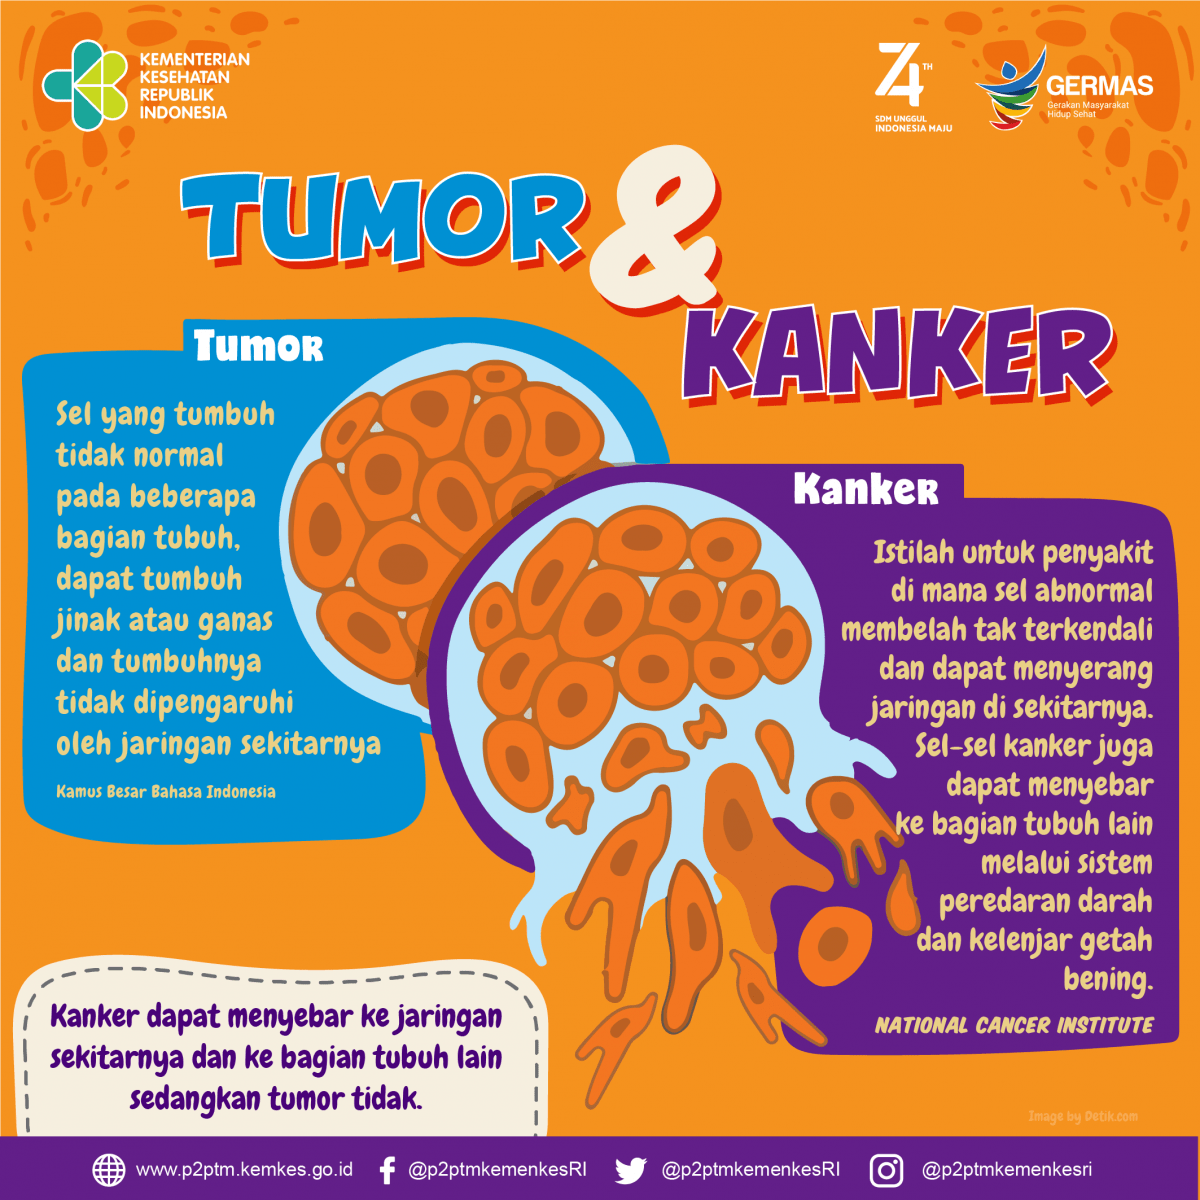 Perbedaan tumor dan kanker